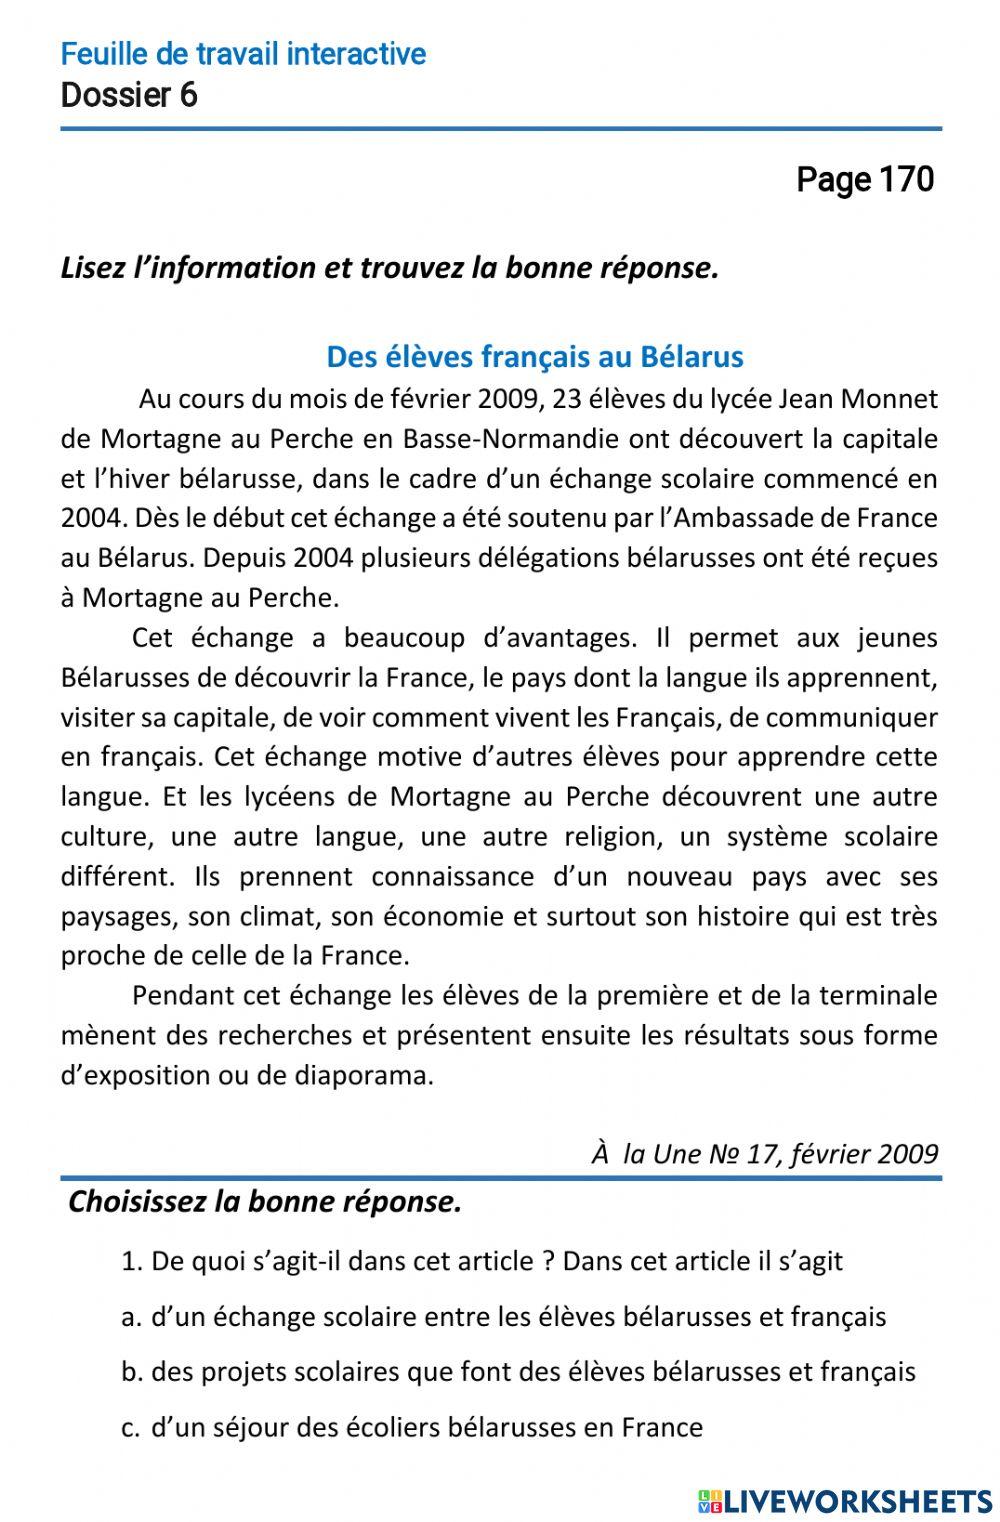 Le français-11 (повыш. ур.)-Dossier 6-Page 170